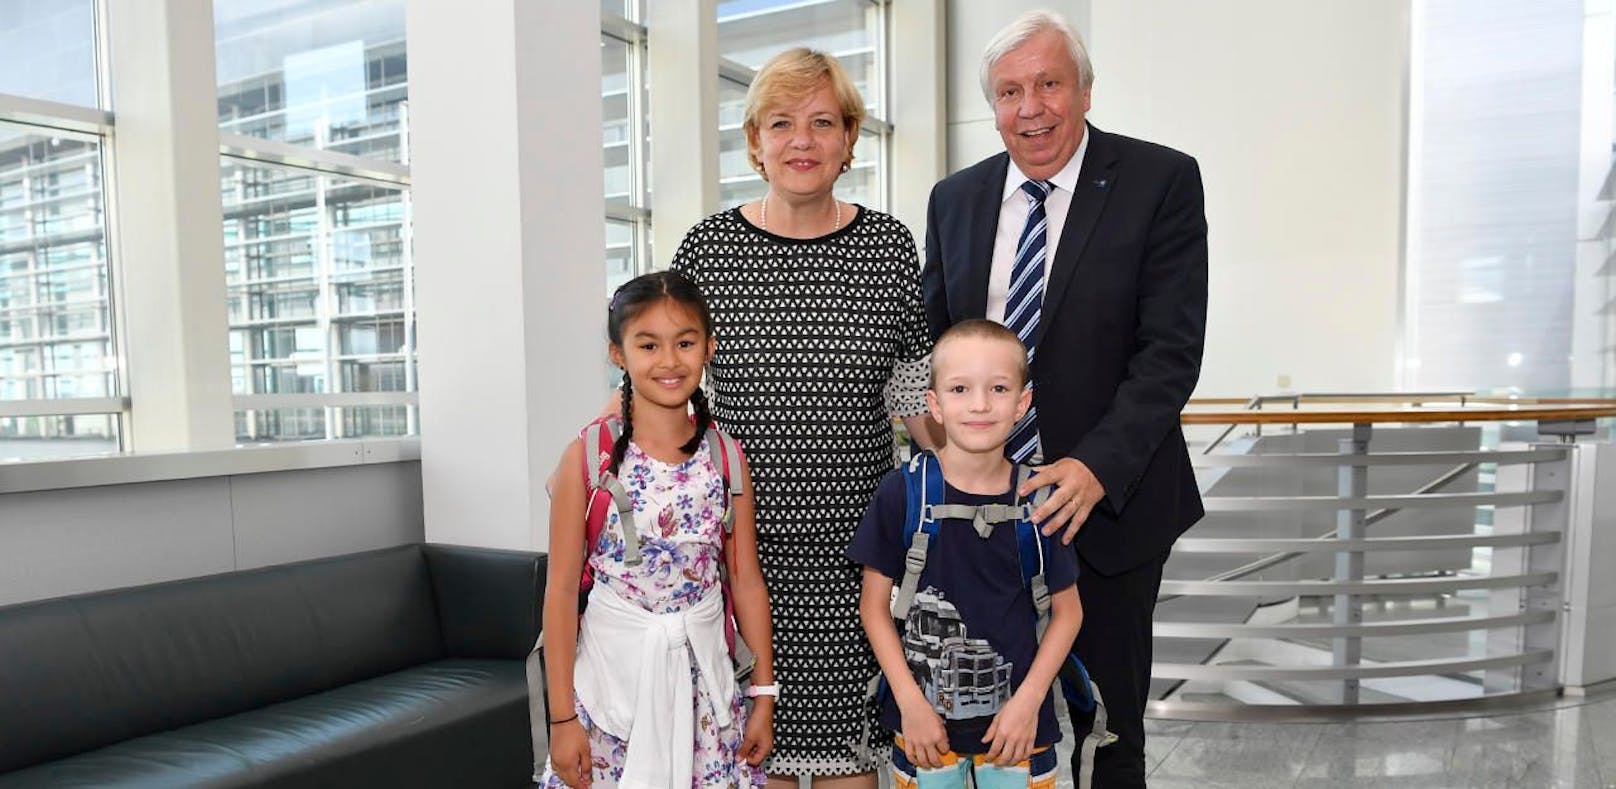 Landesrätin Barbara Schwarz (VP) und Landesschulrat-Präsident Johann Heuras mit den Schülern Tatjana und Max.